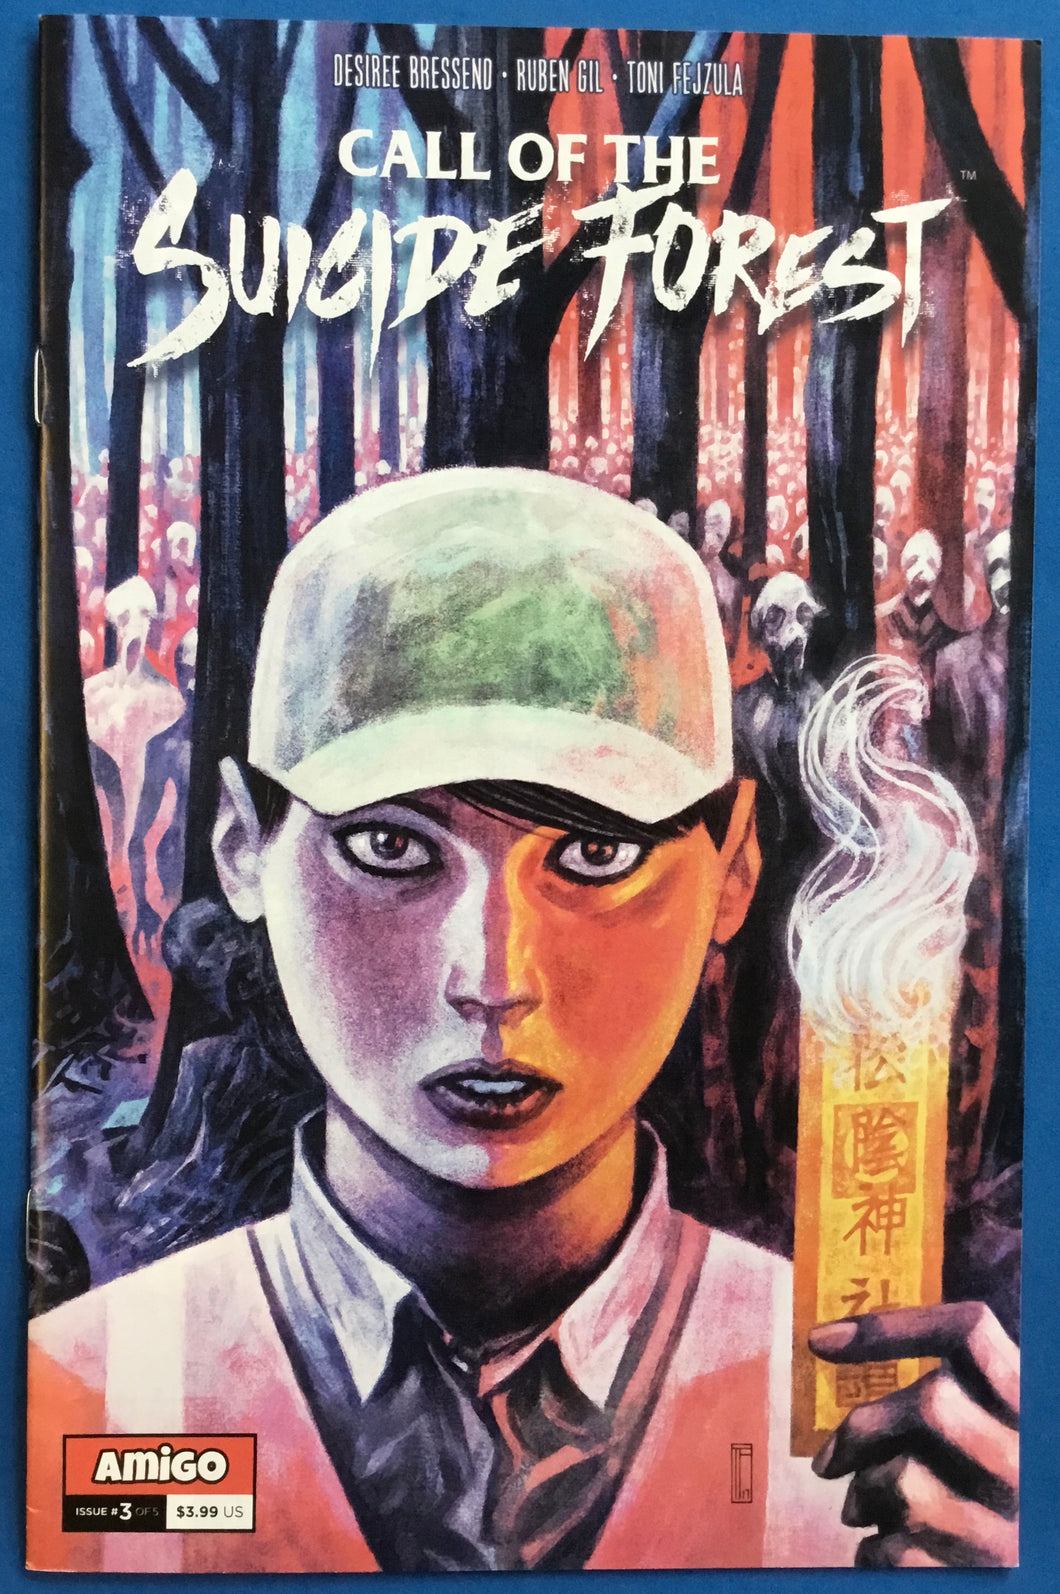 Call of the Suicide Forest No. #3 2018 Amigo Comics